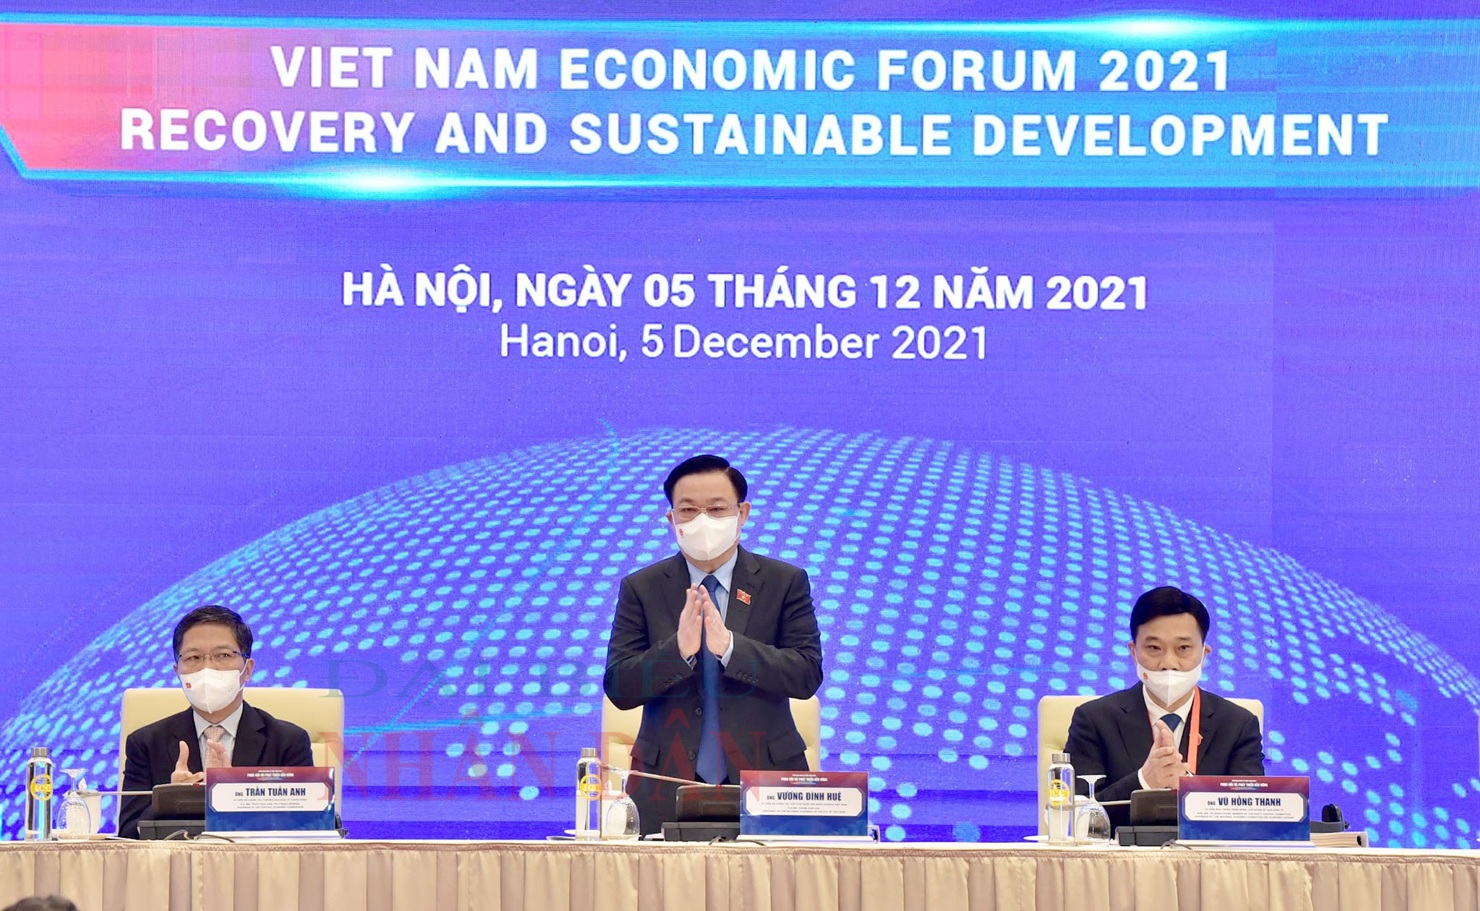 Chủ tịch Quốc hội Vương Đình Huệ và các đại biểu dự Diễn đàn Kinh tế Việt Nam năm 2021 tại điểm cầu Trung tâm Hội nghị Quốc tế.